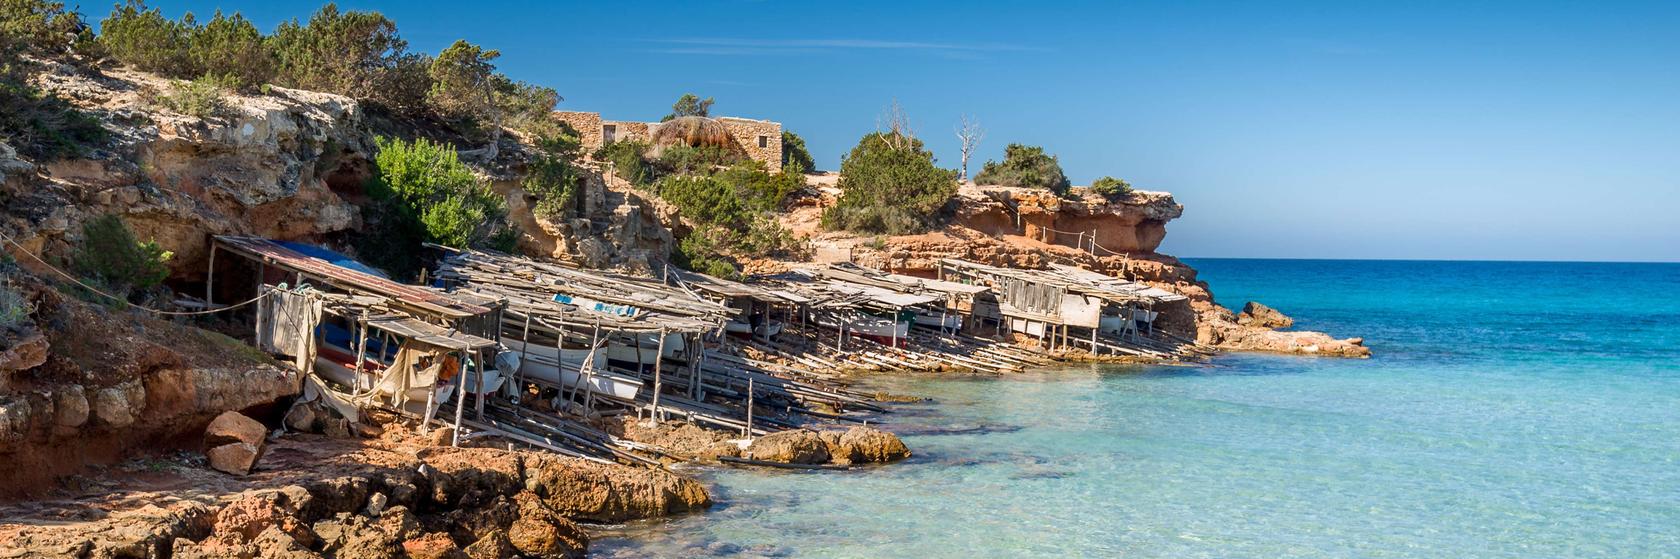 Tipy na výlety na Formenteře